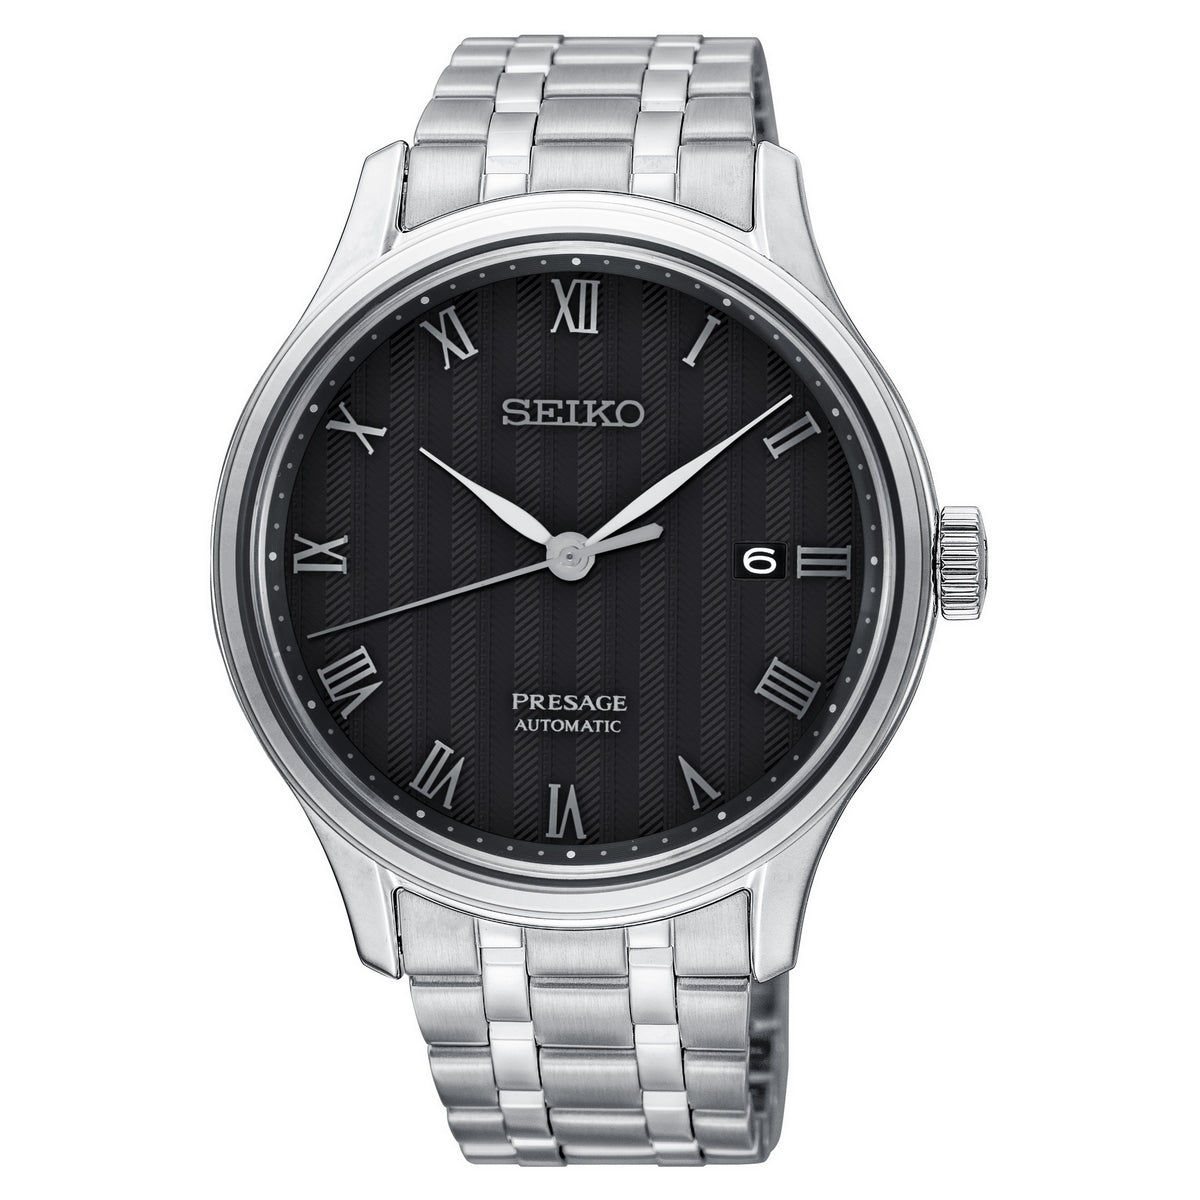 Seiko Men's Presage Watch - SRPC81J1